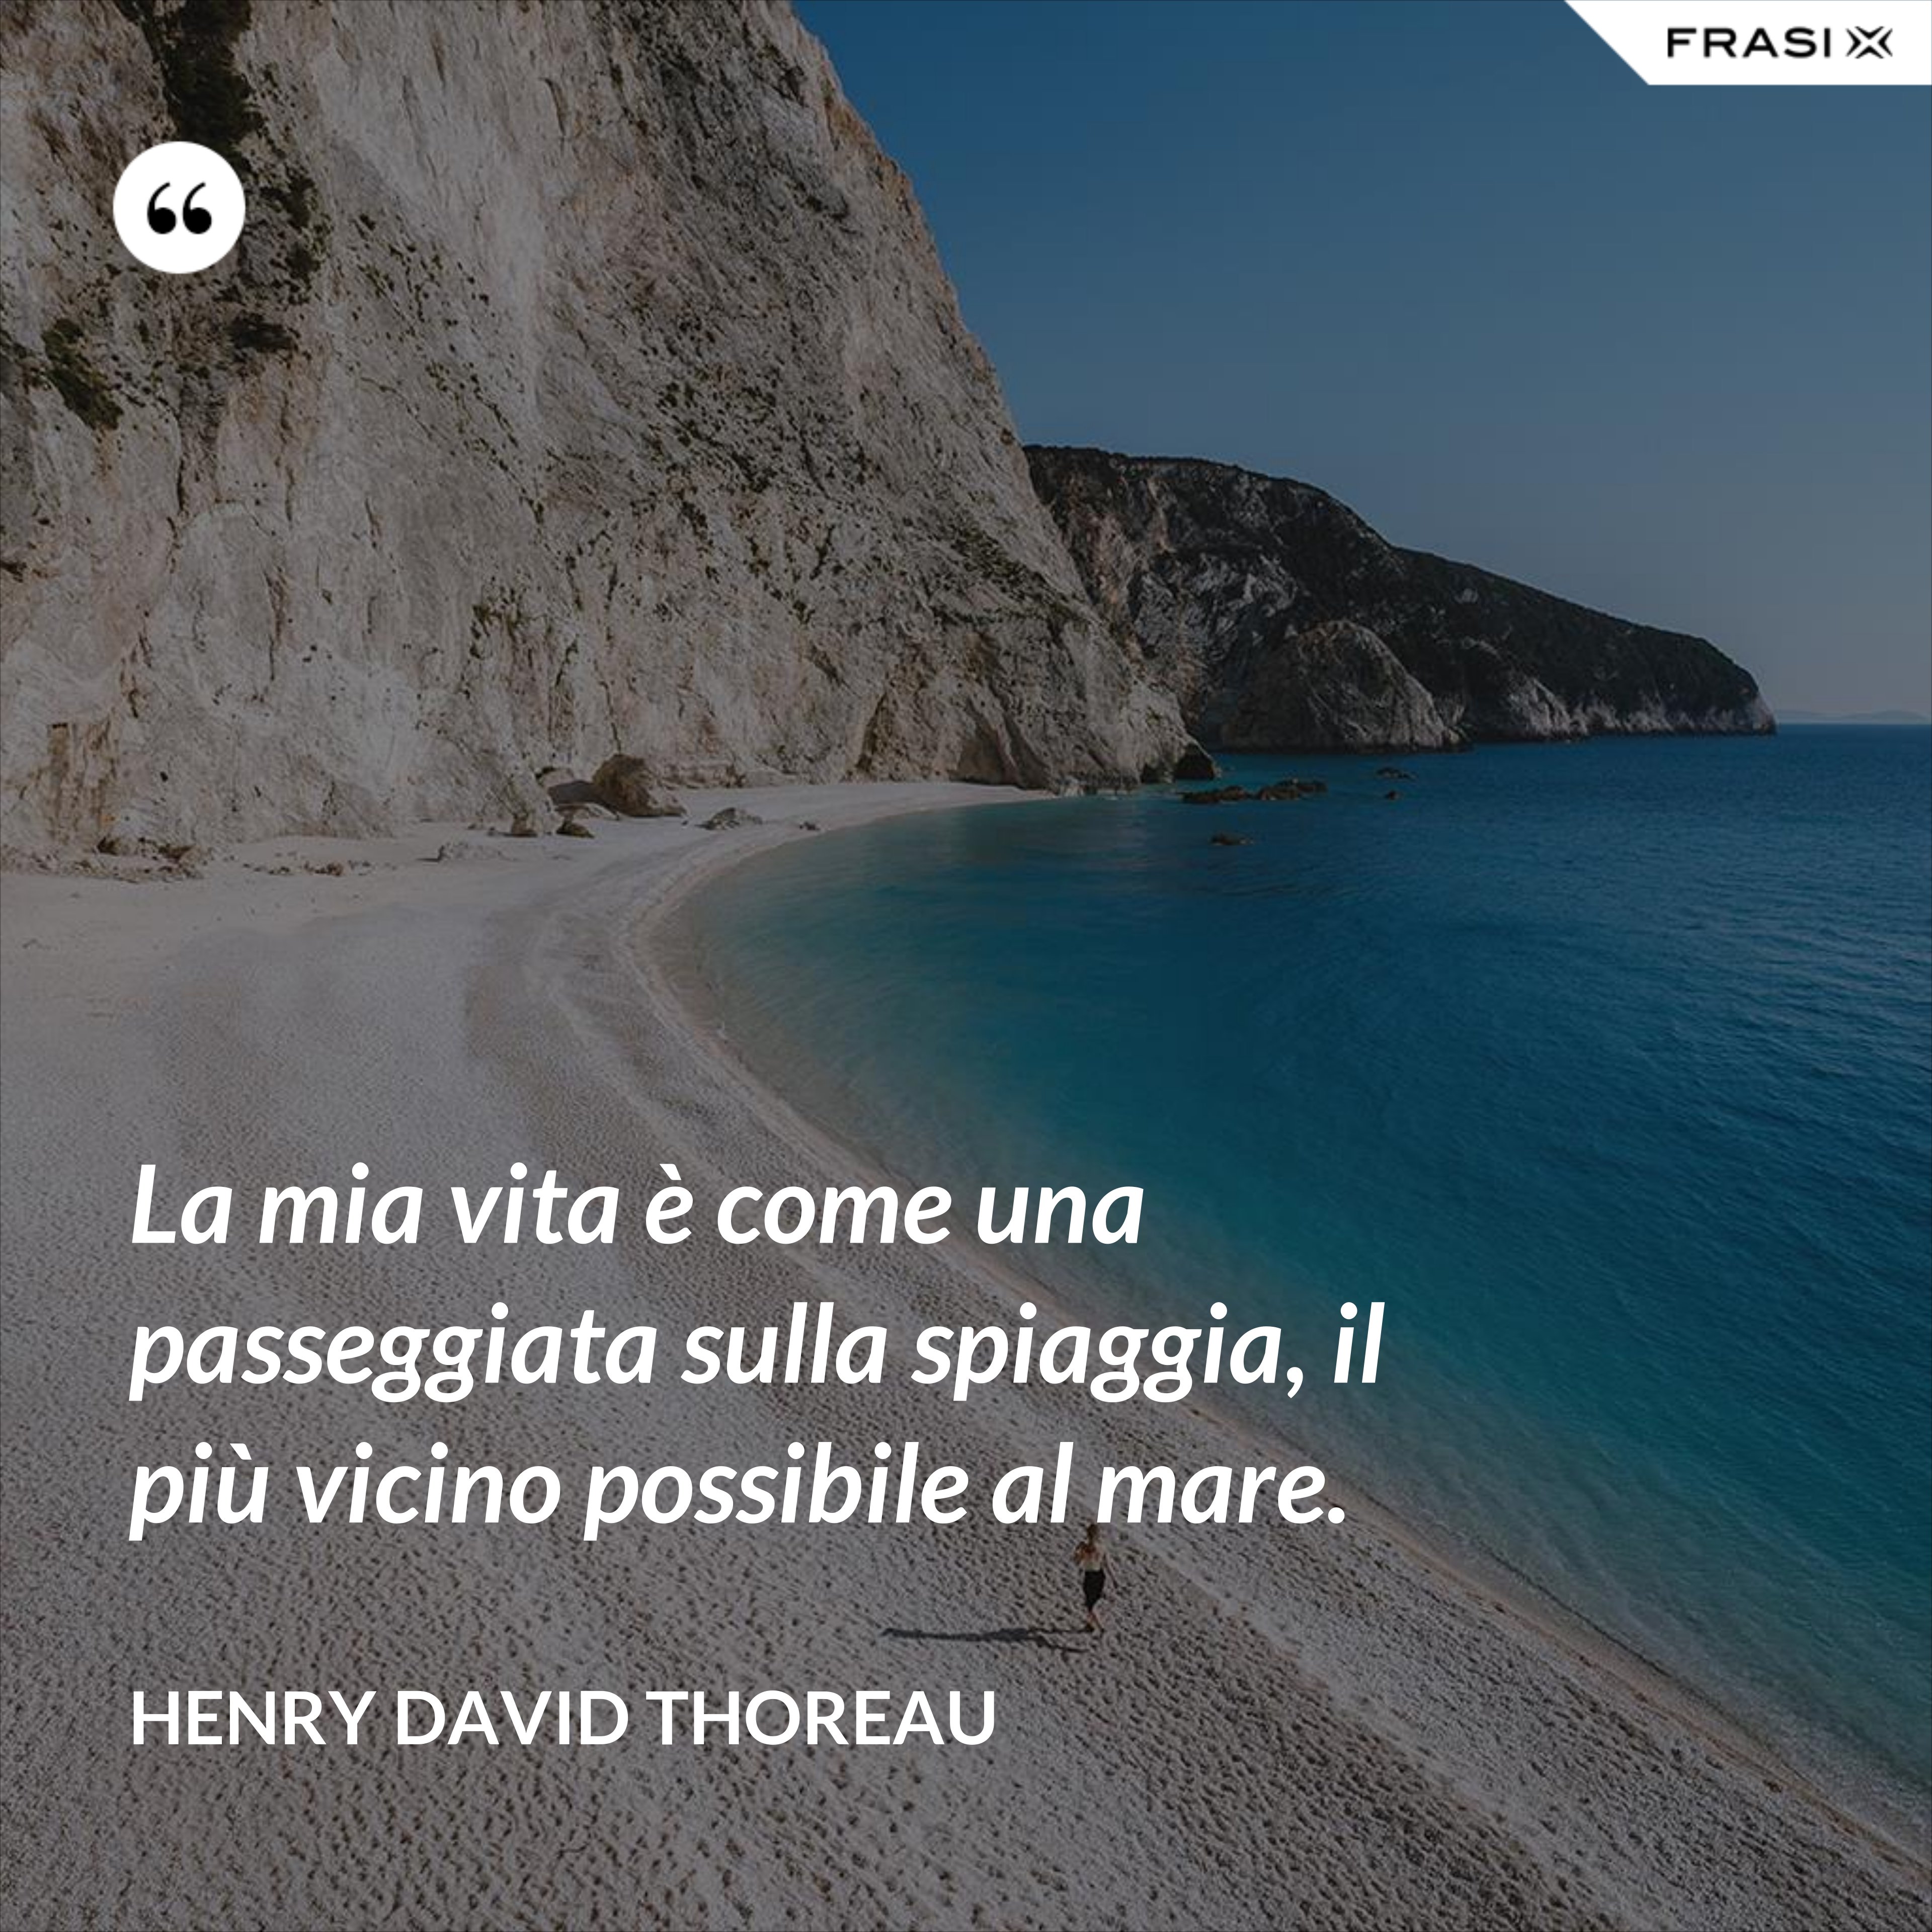 La mia vita è come una passeggiata sulla spiaggia, il più vicino possibile al mare. - Henry David Thoreau